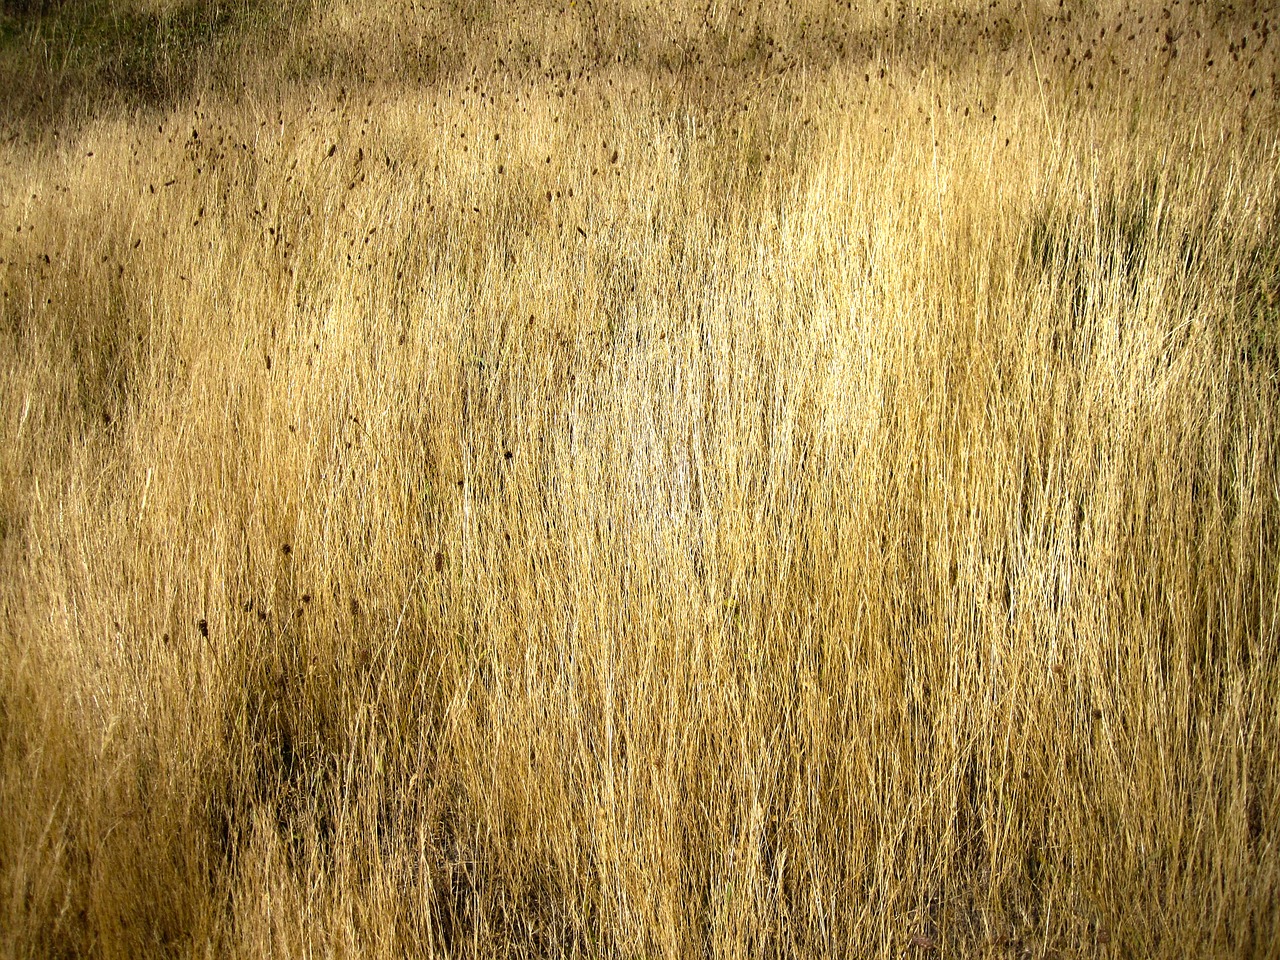 grassland texture patagonia free photo